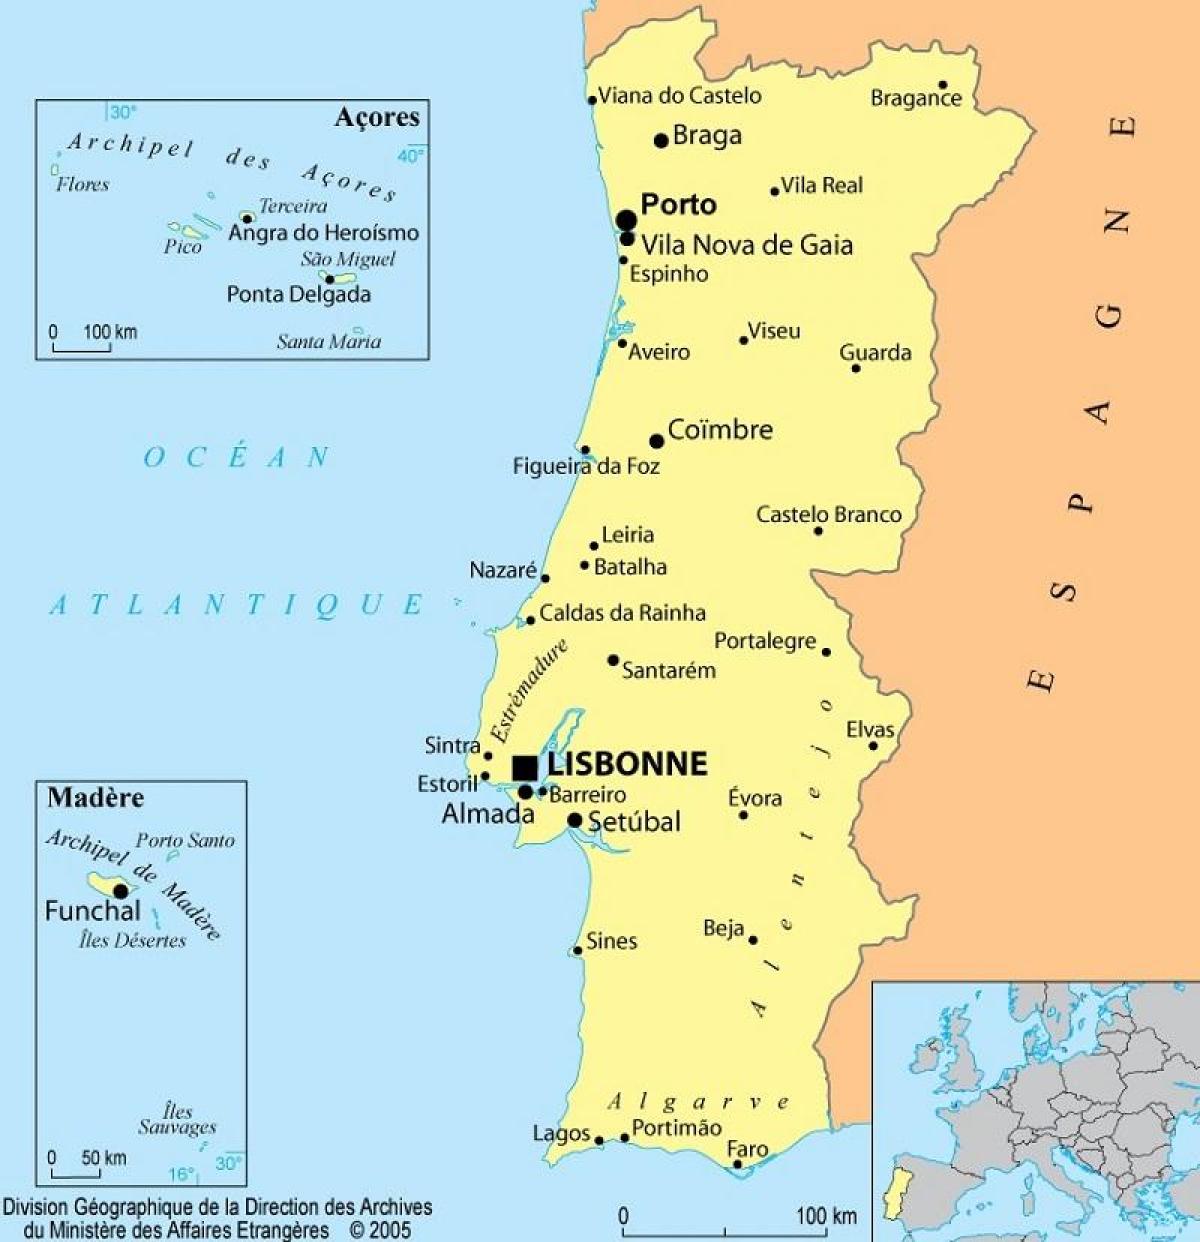 Karte von Portugal und den Azoren